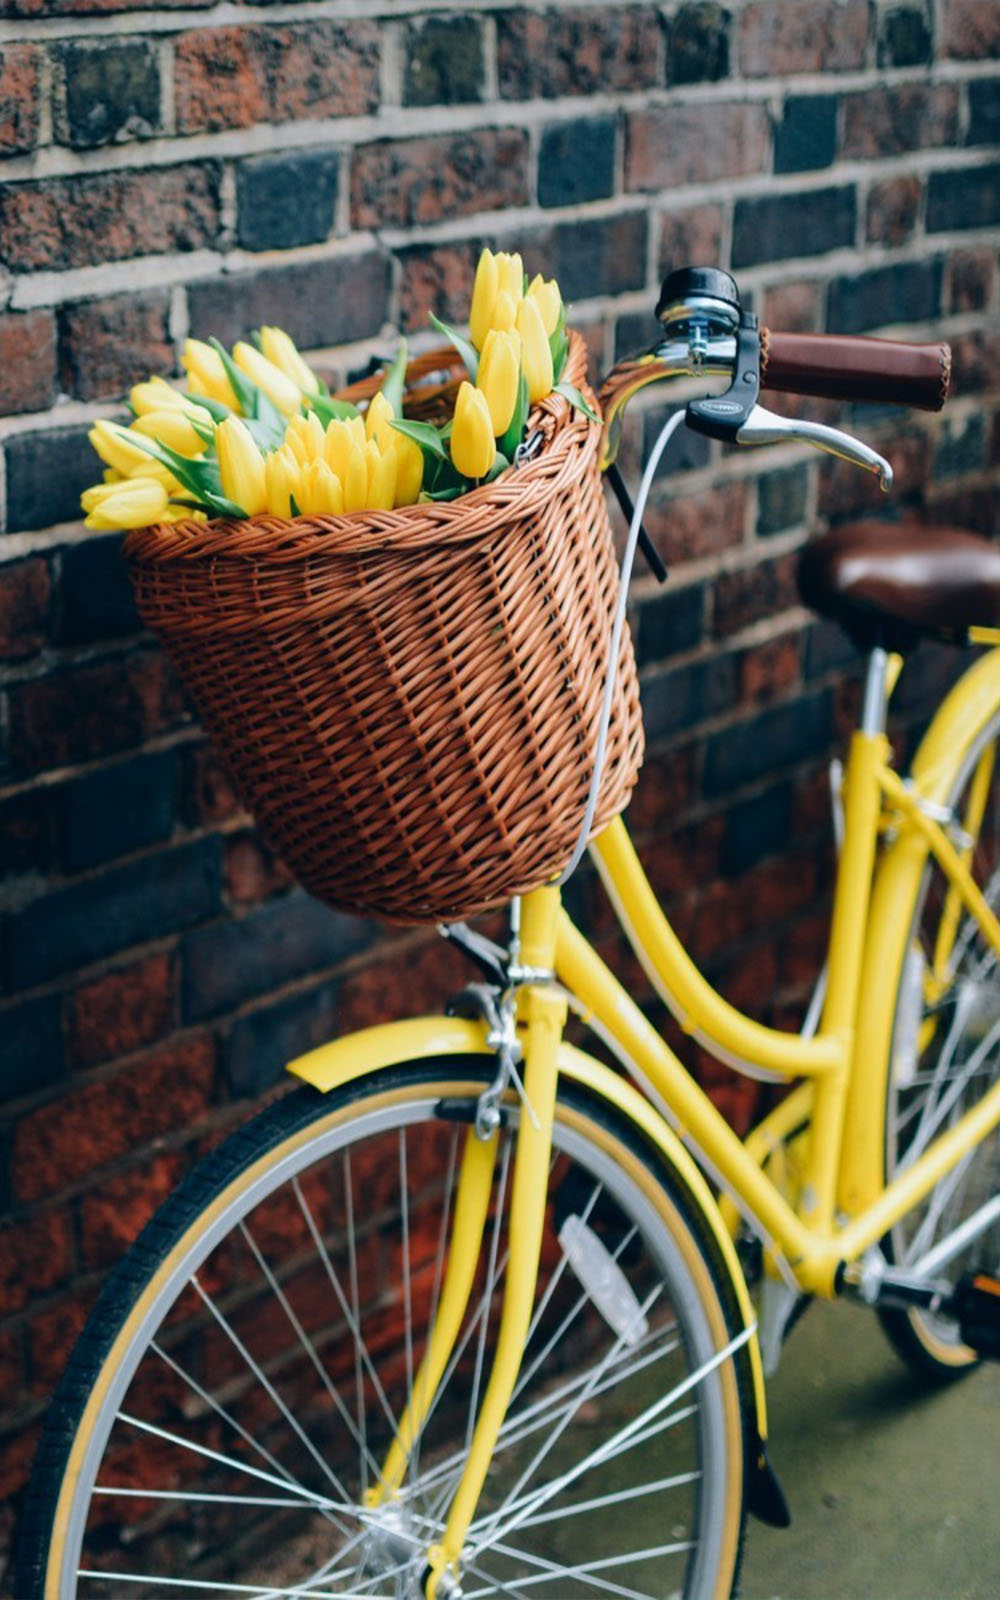 Yellow Tulips Flower Basket & Bike 4K Ultra HD Mobile Wallpaper